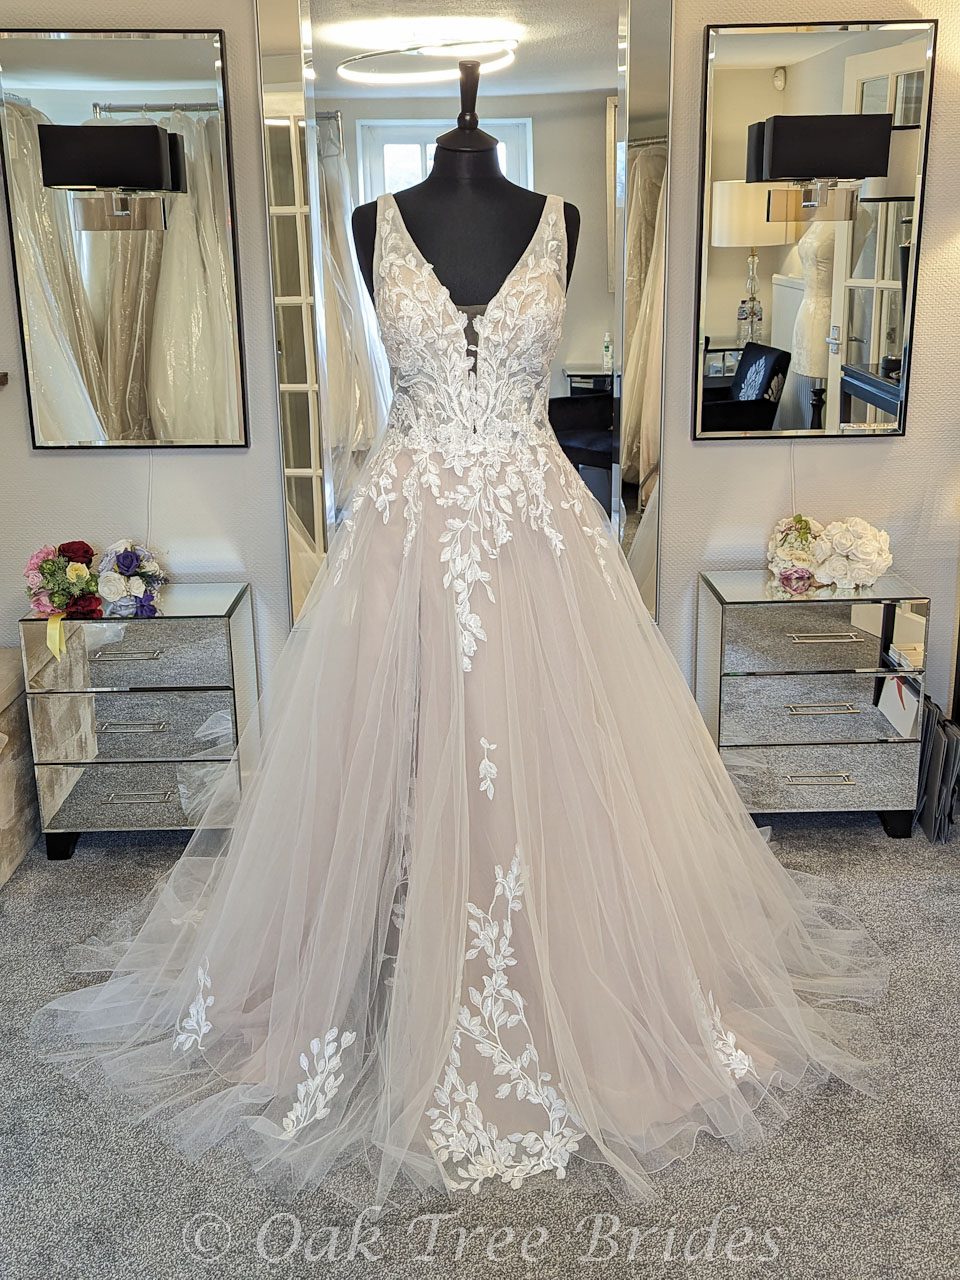 size 16 wedding dress